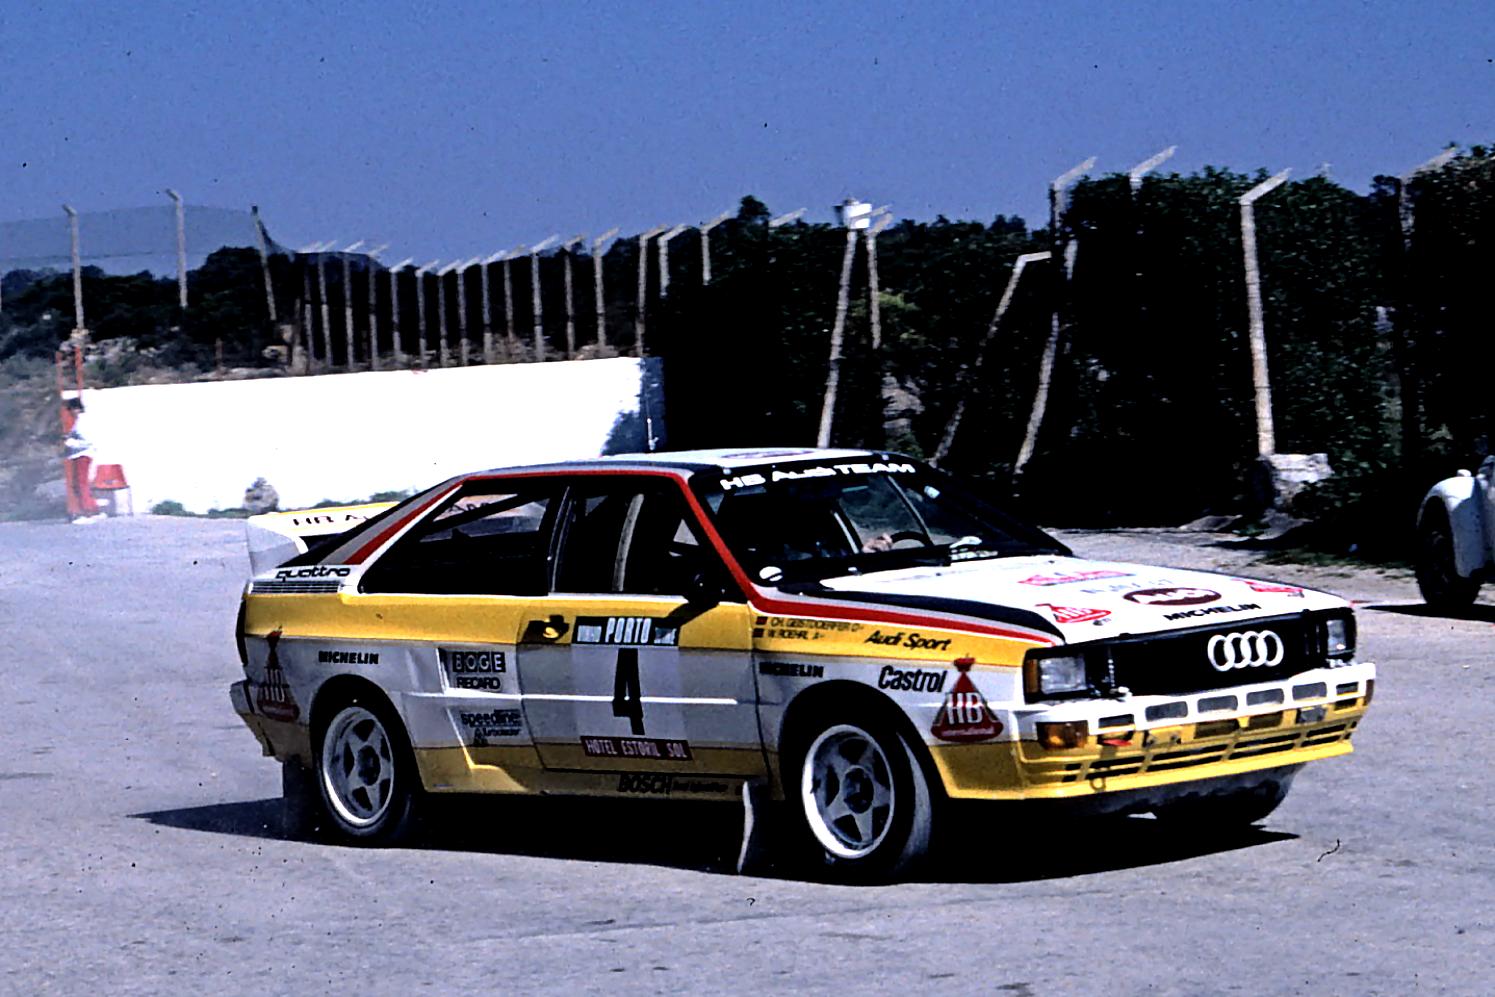 Audi Quattro 1980 on MotoImg.com